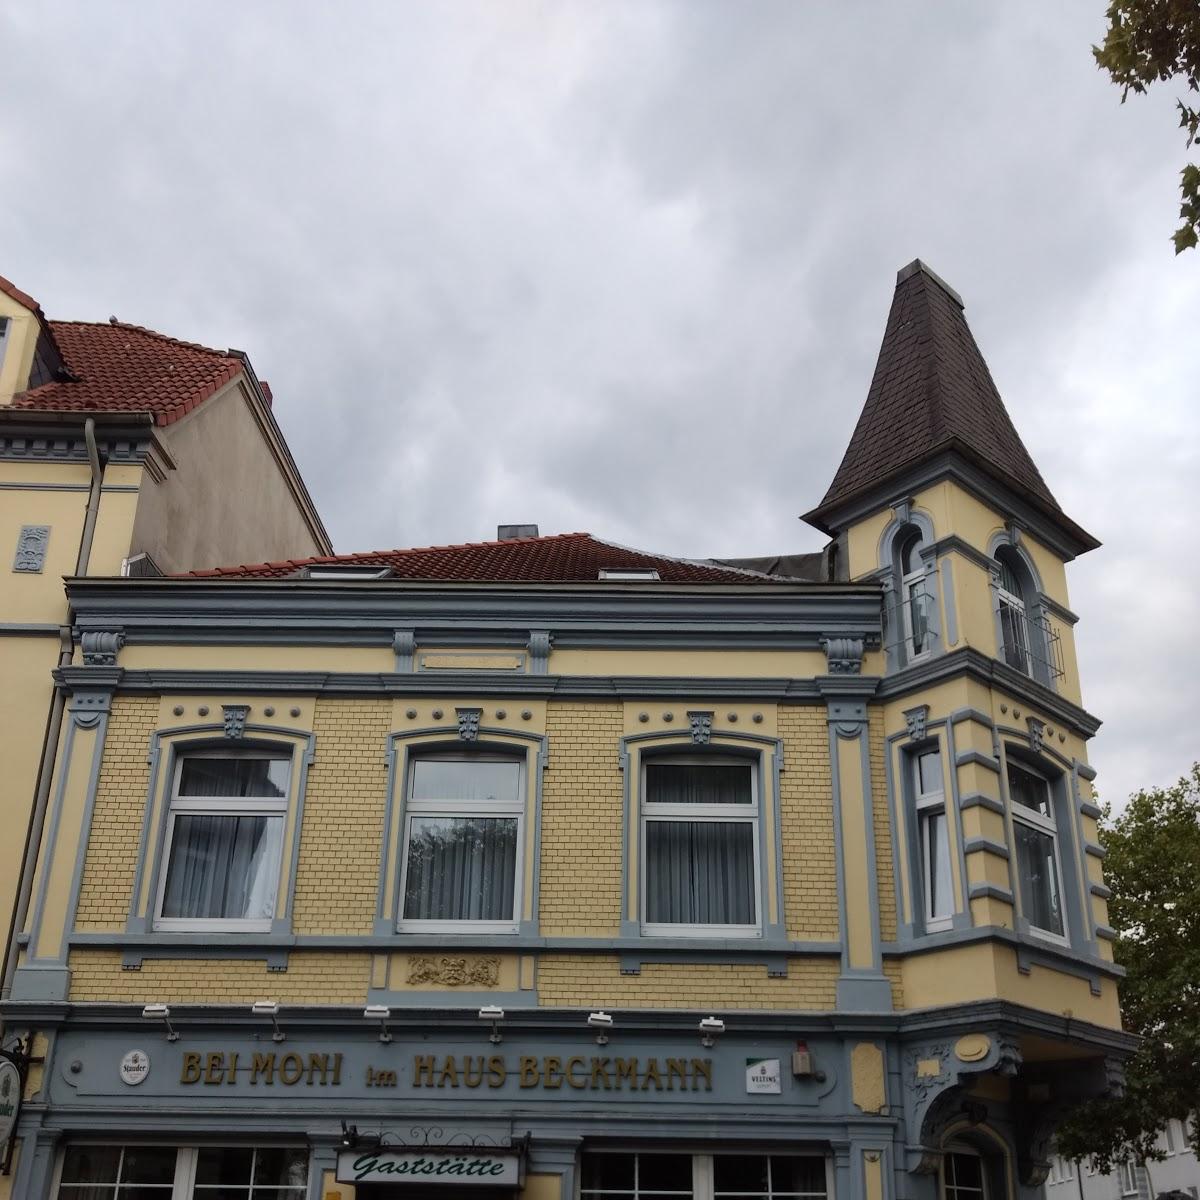 Restaurant "Bei Moni im Haus Beckmann" in Gelsenkirchen